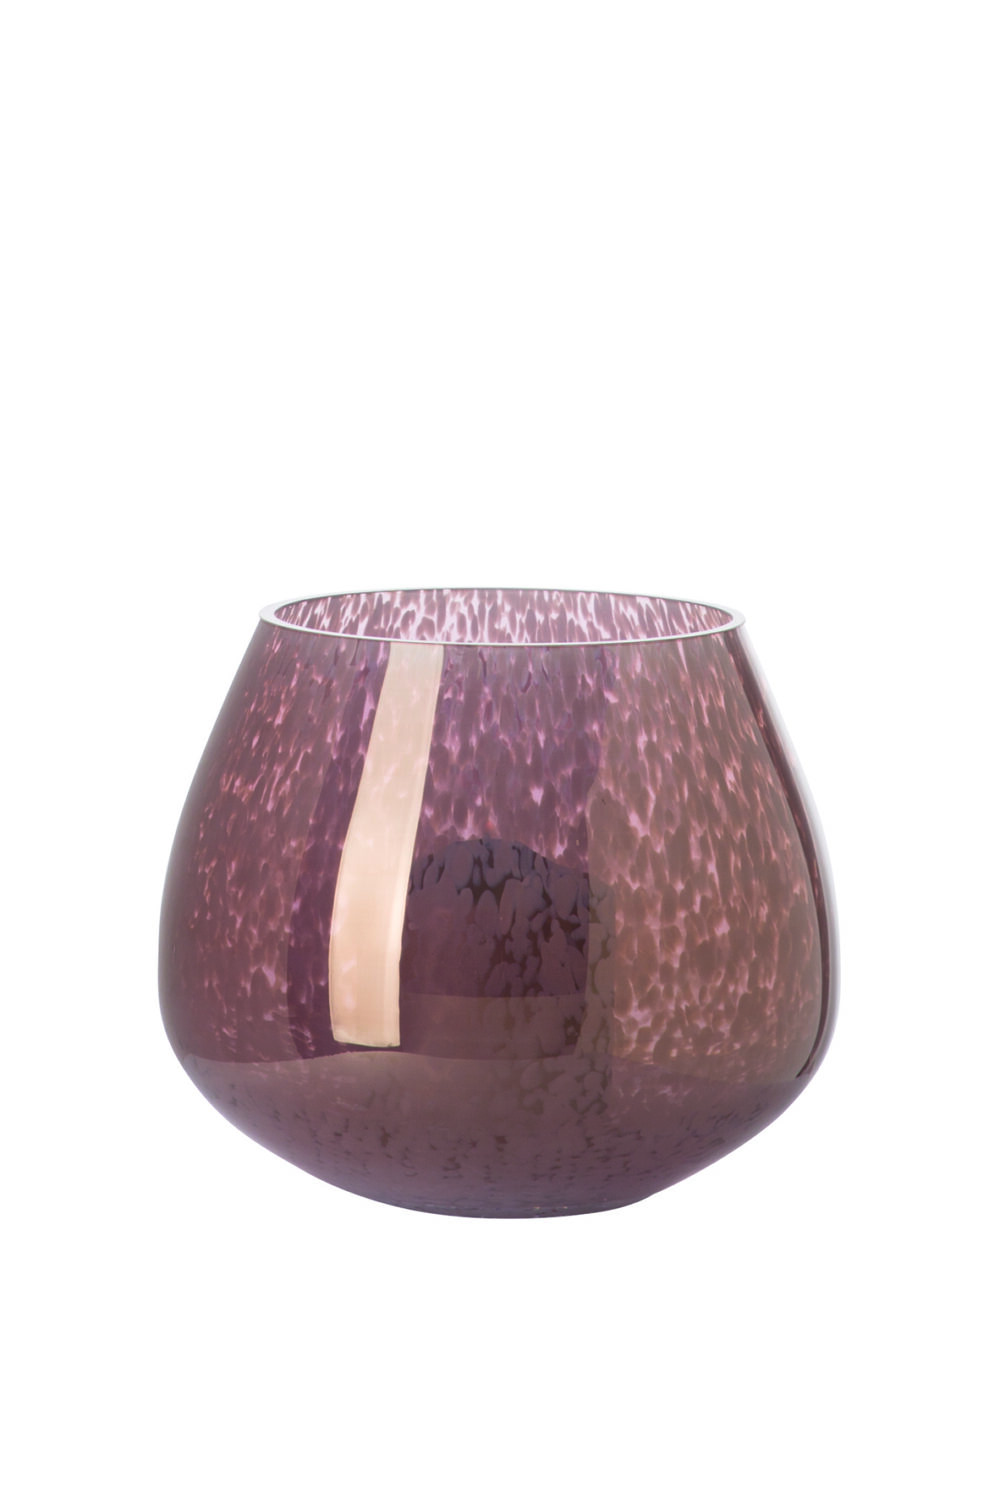 115367 Dekovase Vase Blumenvase Glas luster braun, weiß NICOLA 22 cm